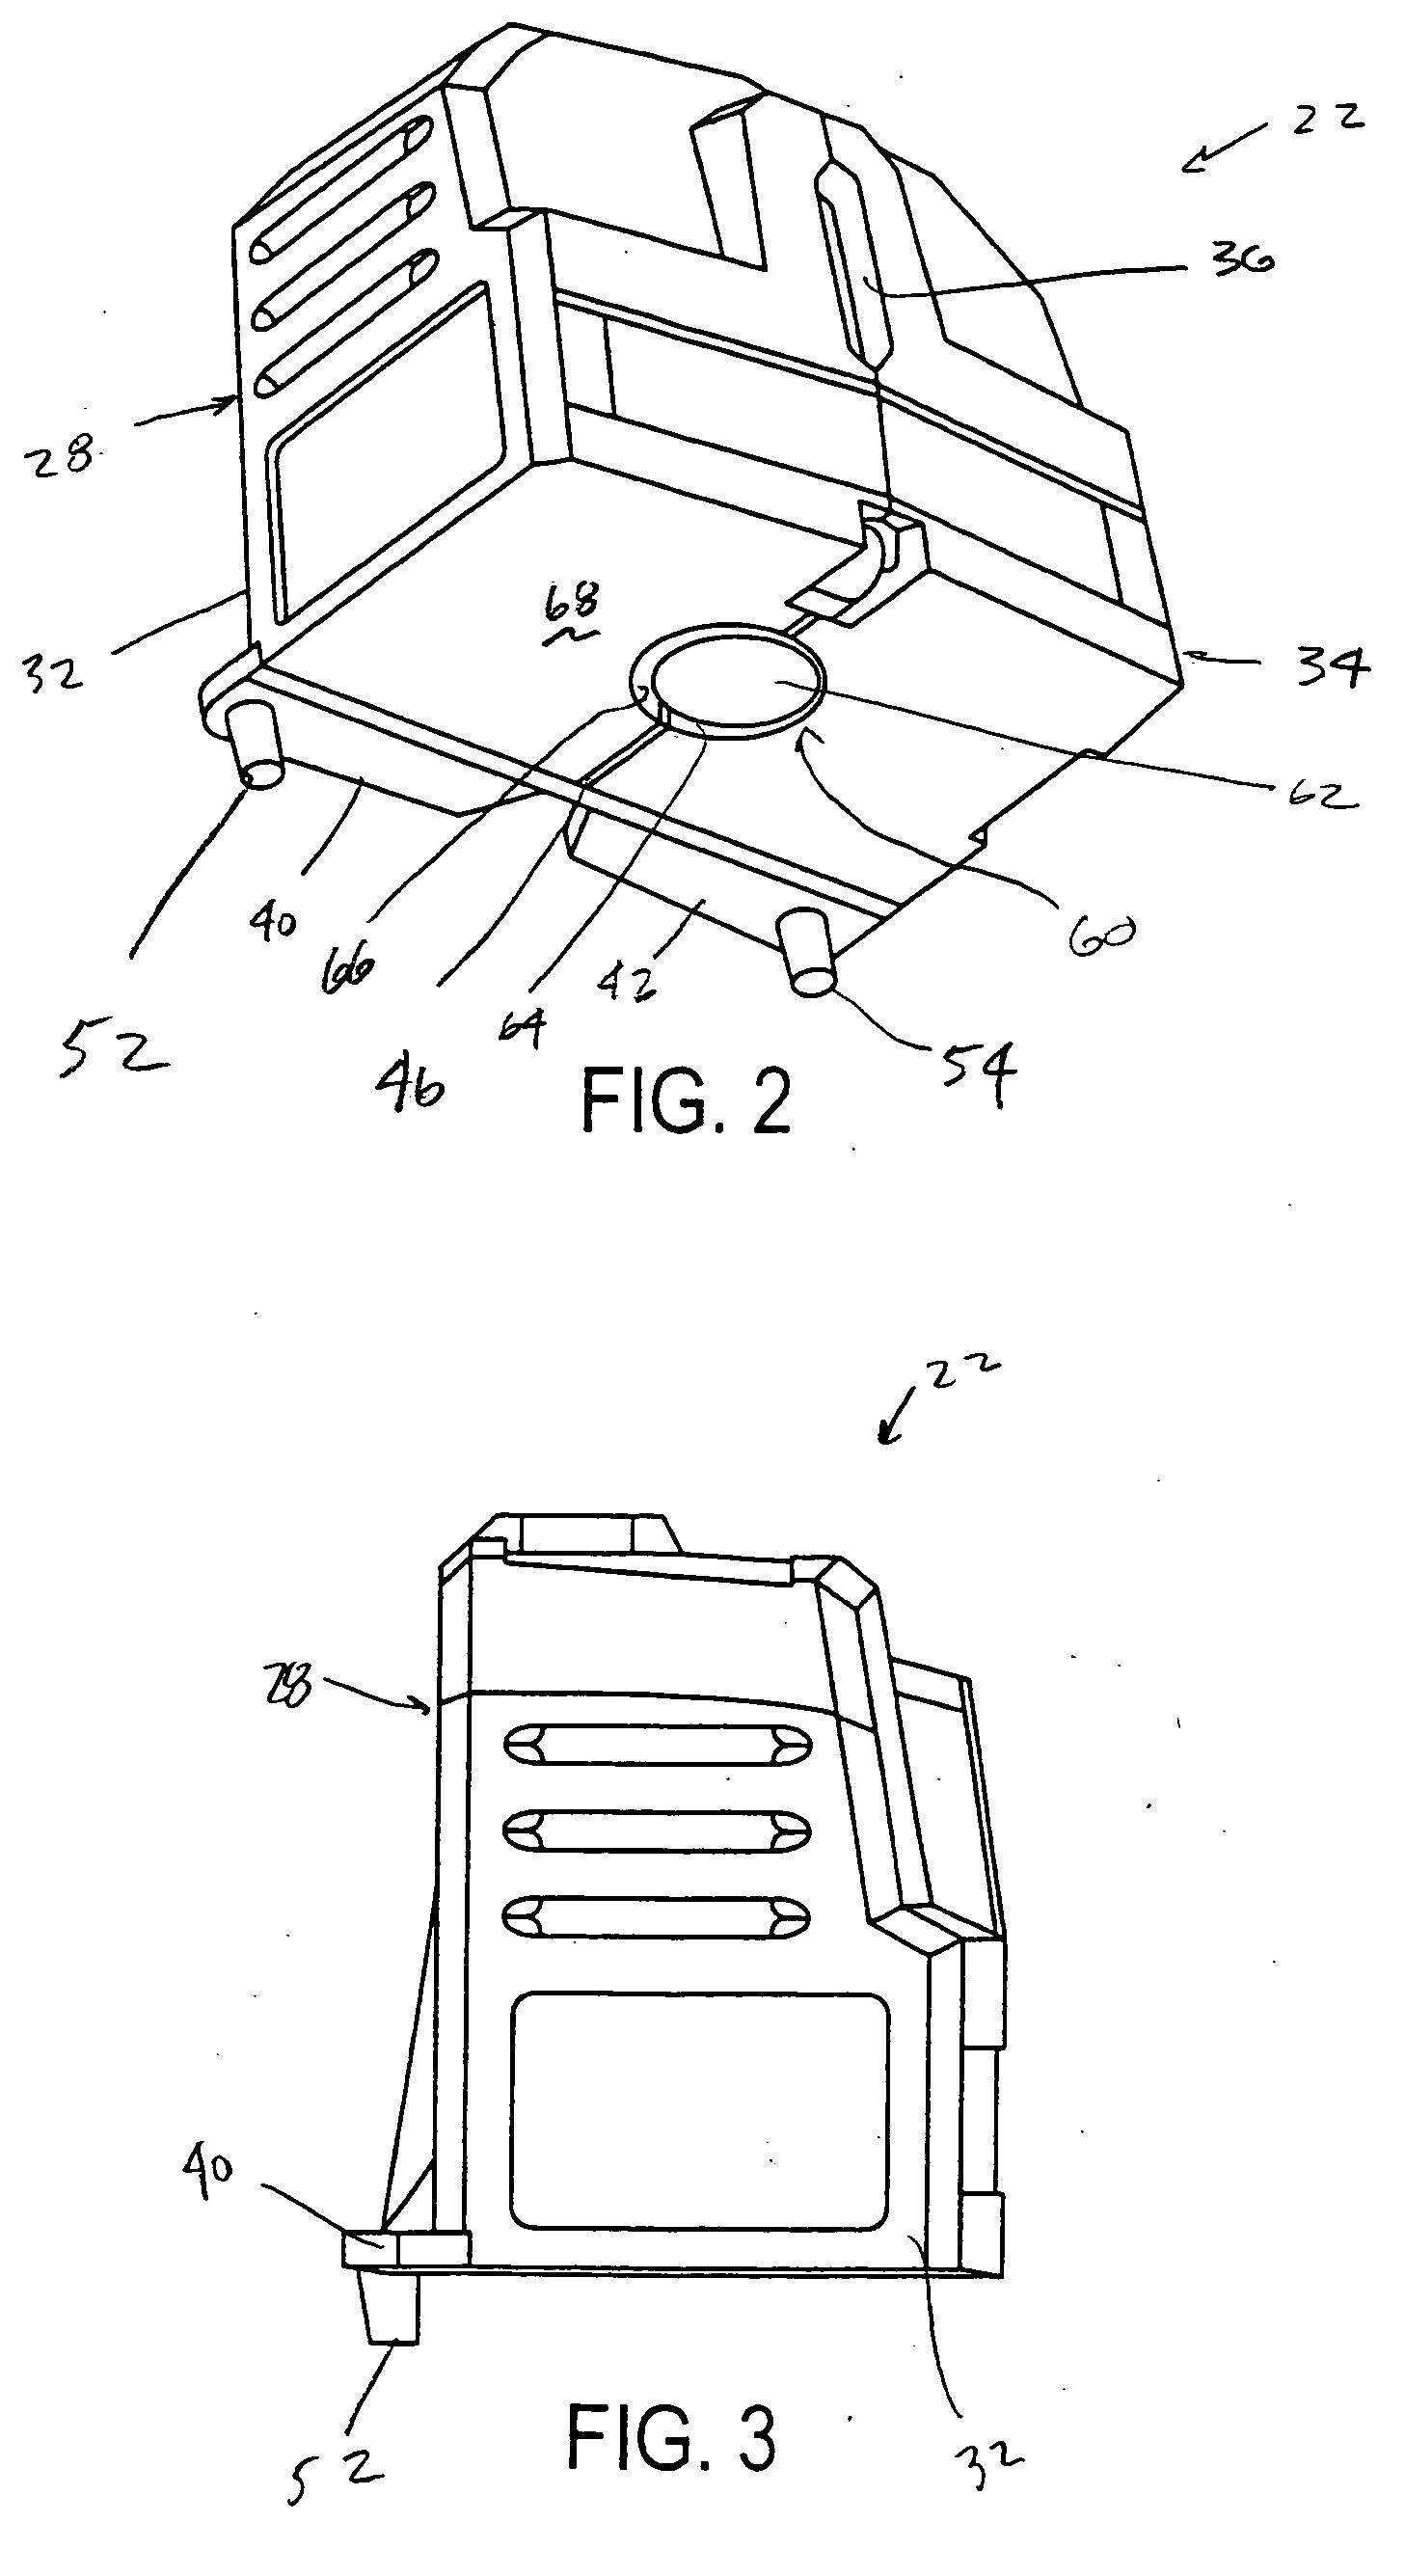 Laser square protractor kit